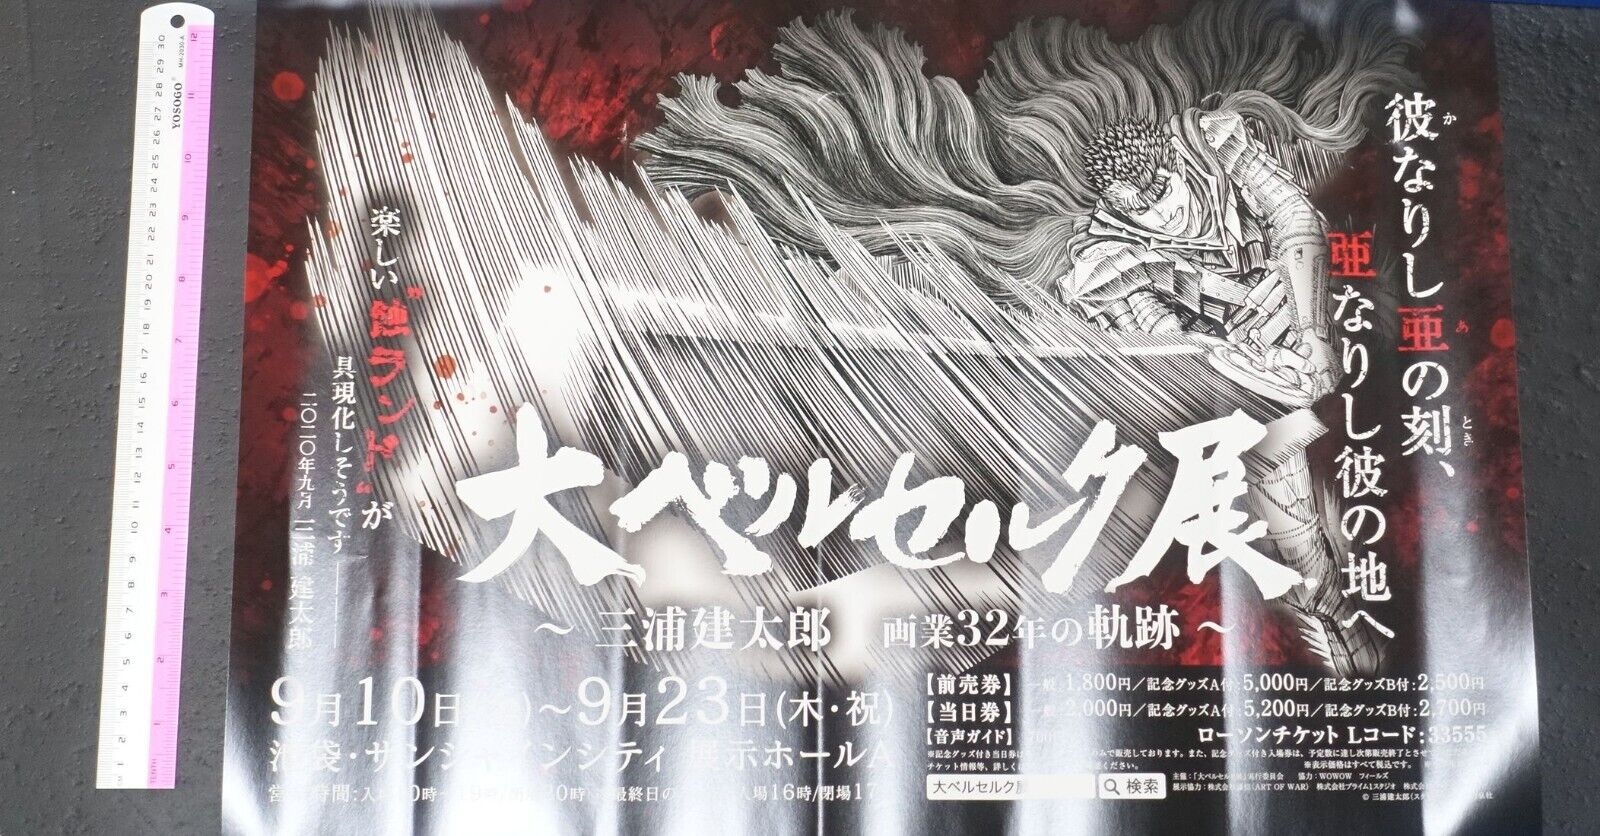 Berserk Kentaro Miura Exhibition Event Poster 